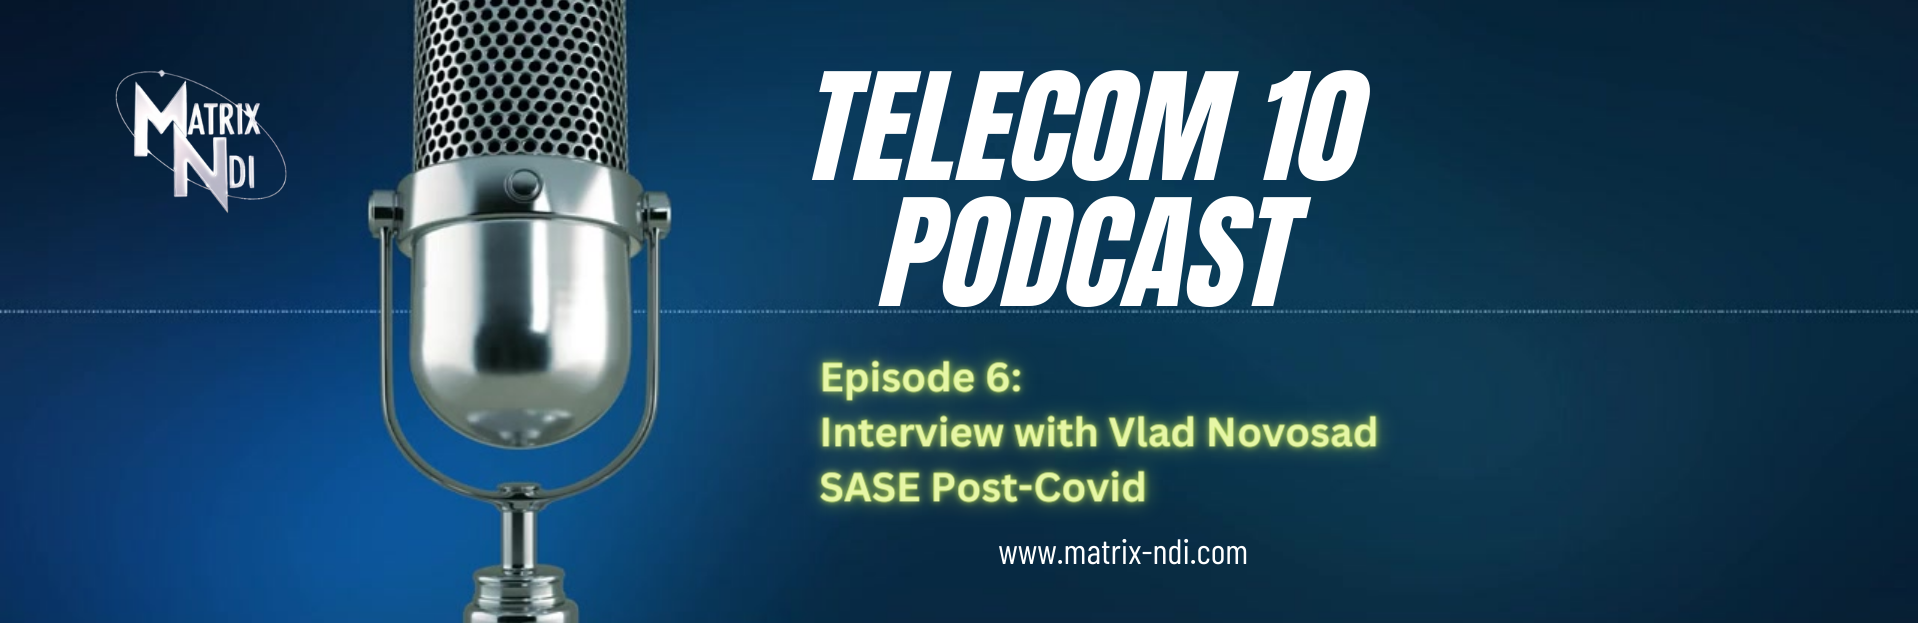 Matrix-NDI Telecom 10 Podcast 6: SASE Post-COVID